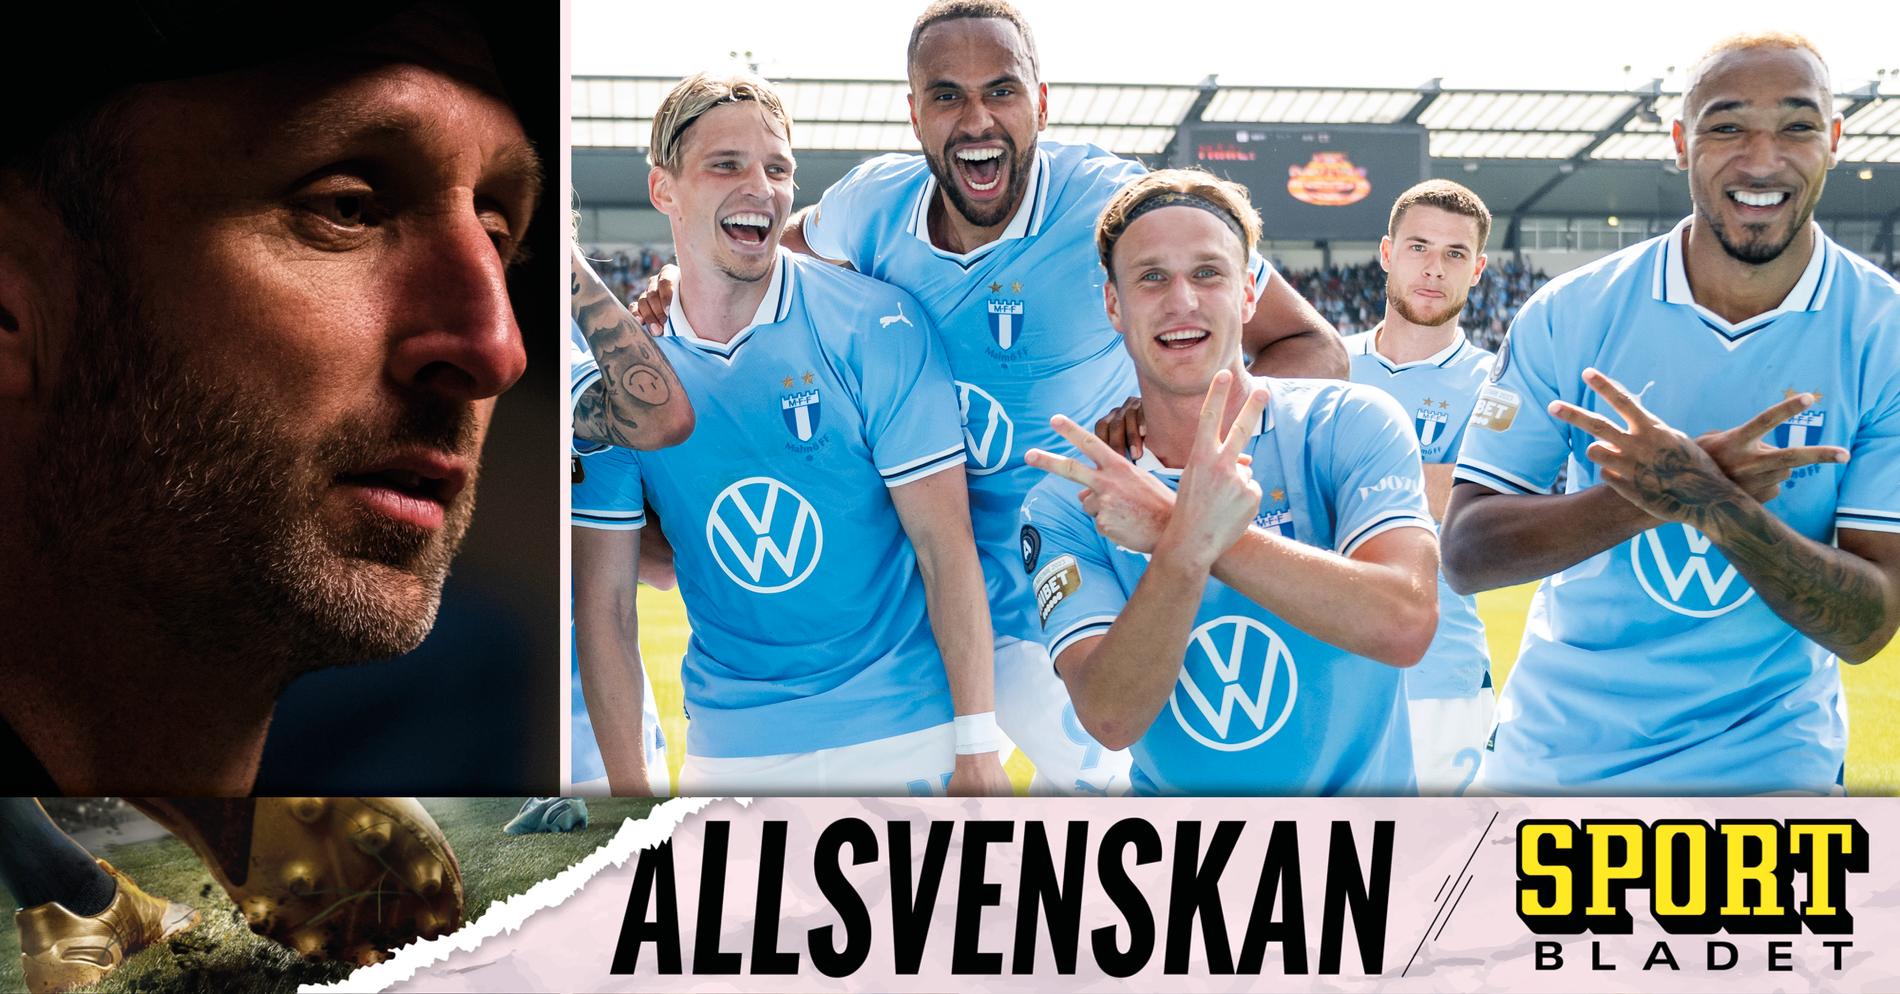 ”Är väntan på en avrättning då” • Podden Sportbladet Allsvenskan med nytt avsnitt